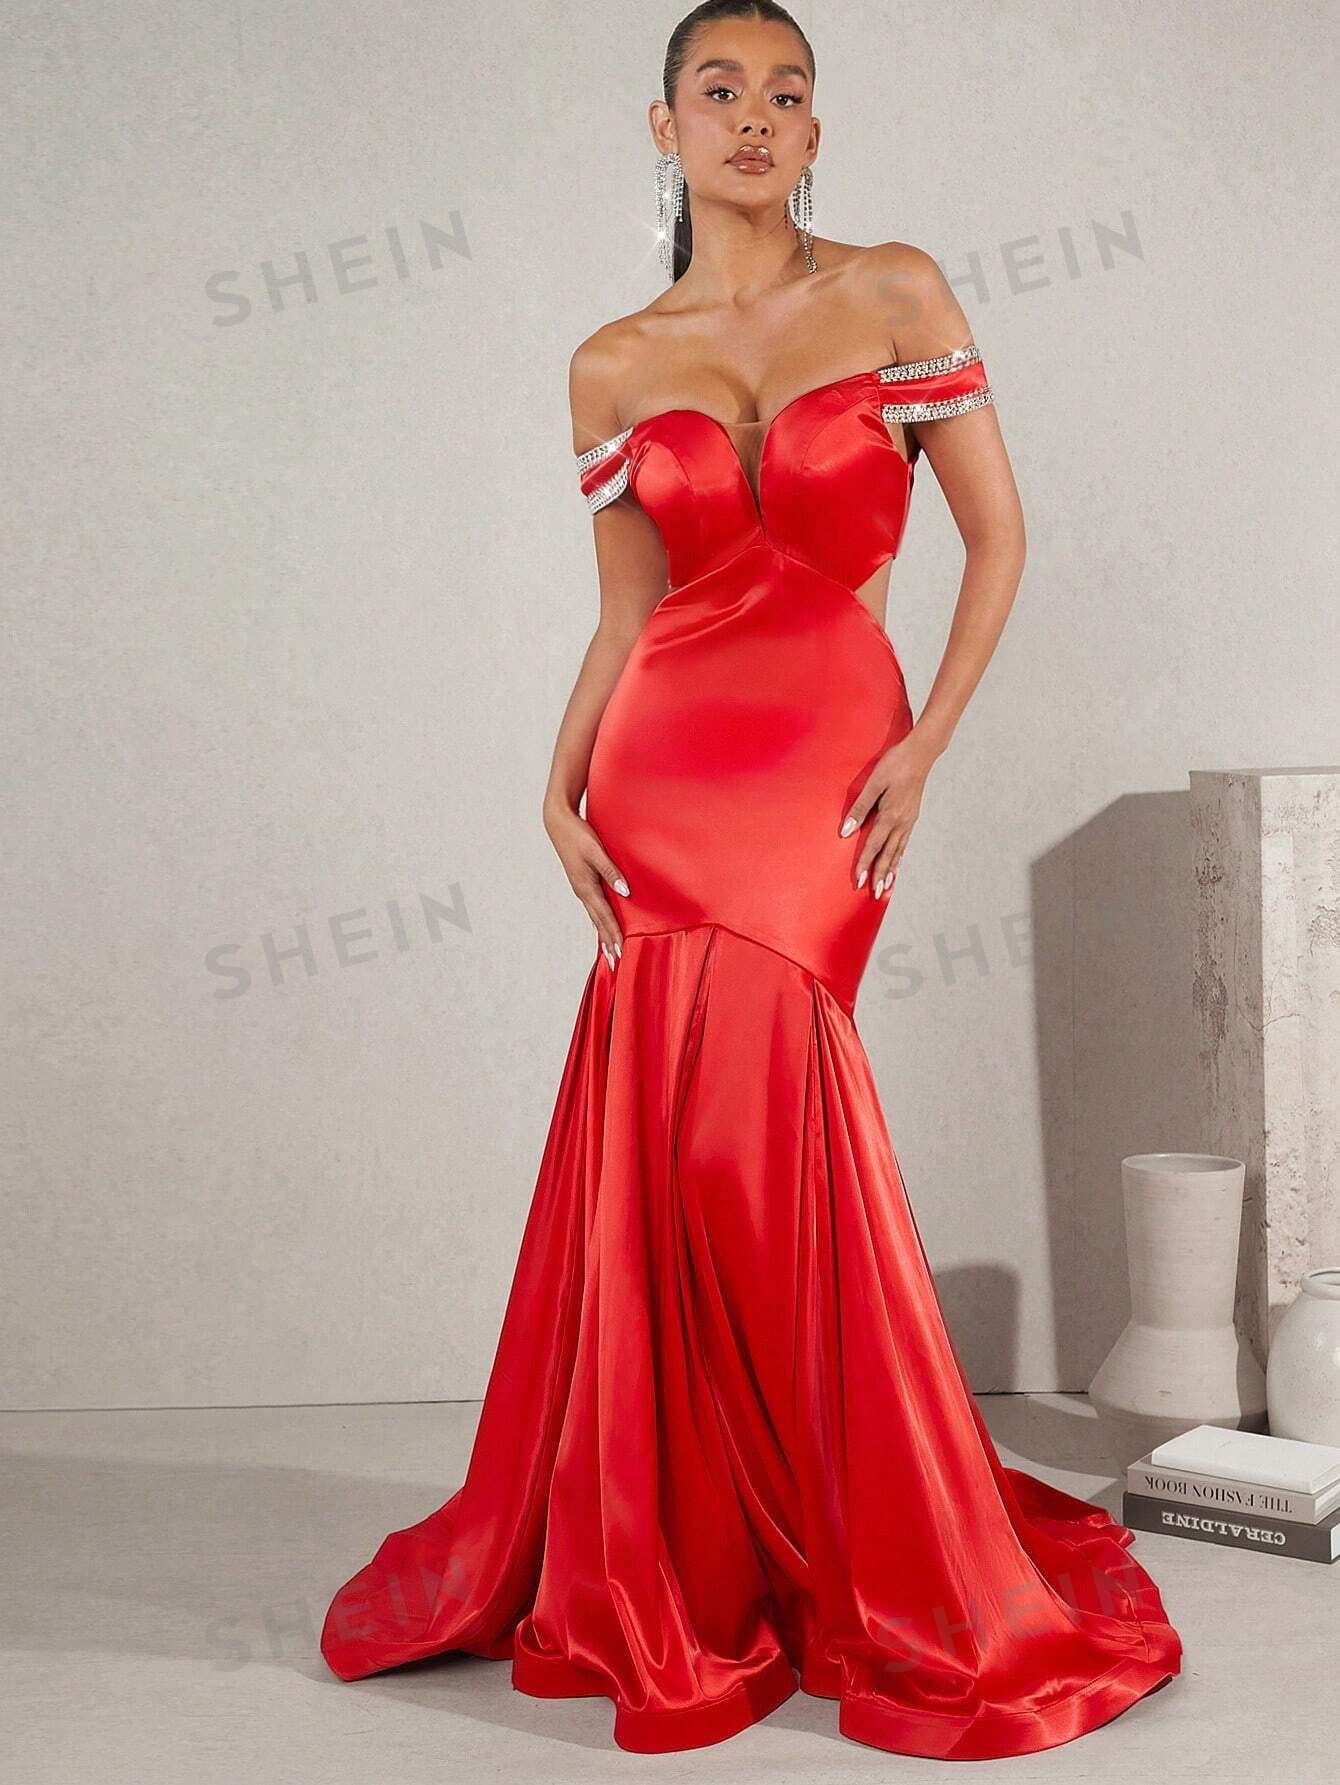 SHEIN Haute Атласное платье с открытыми плечами и подолом русалки, красный